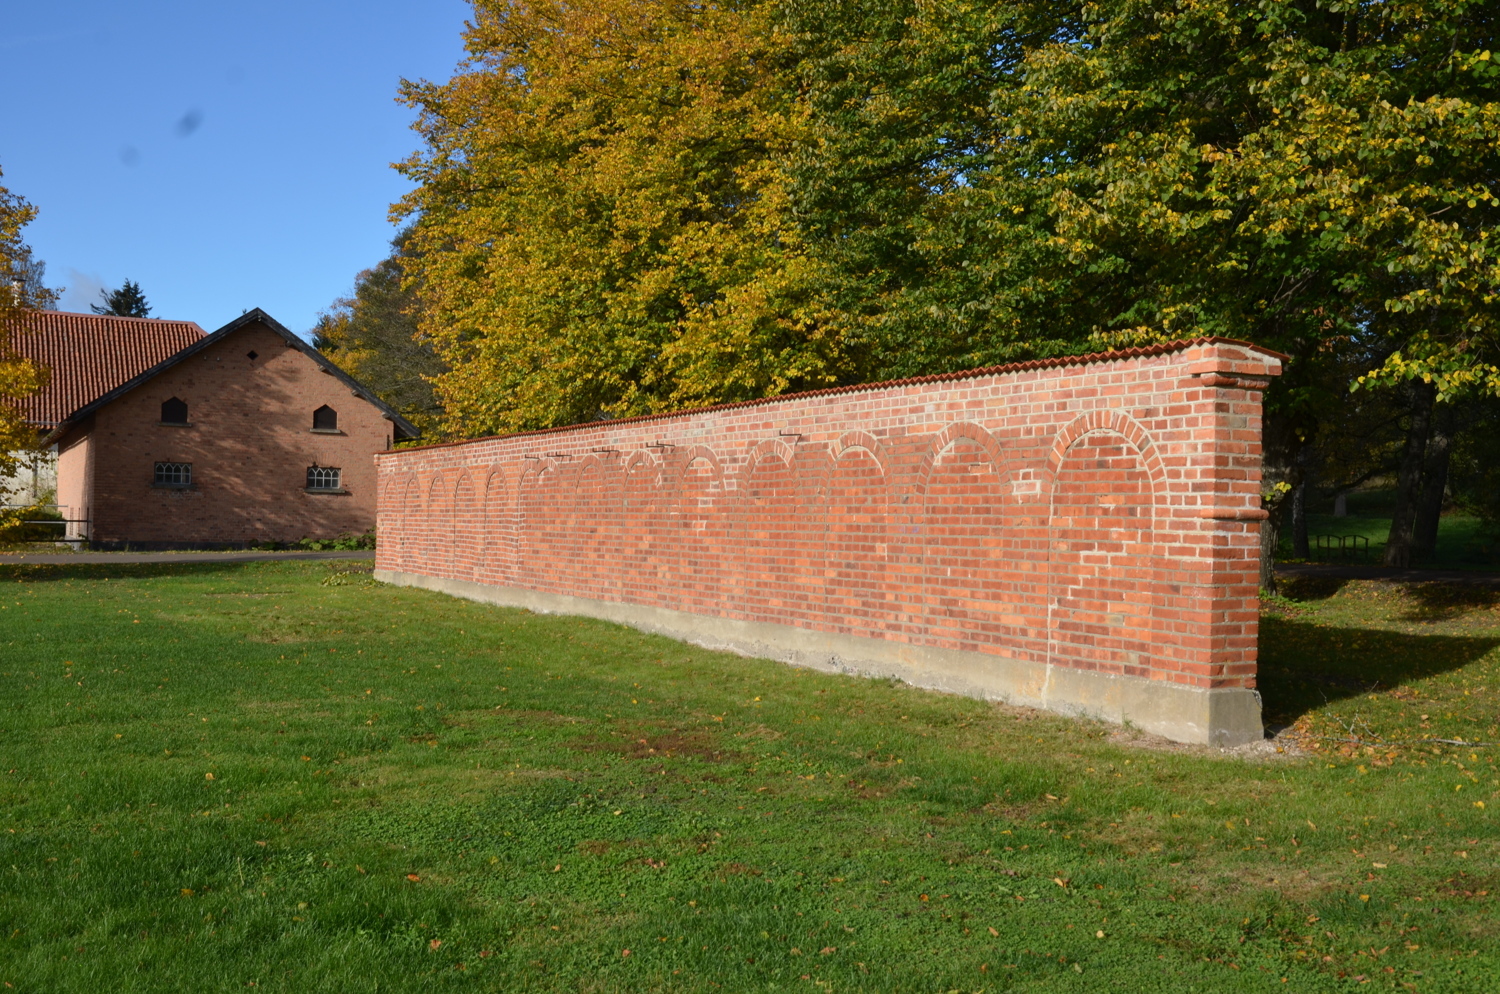 Muren från sydost efter renovering.